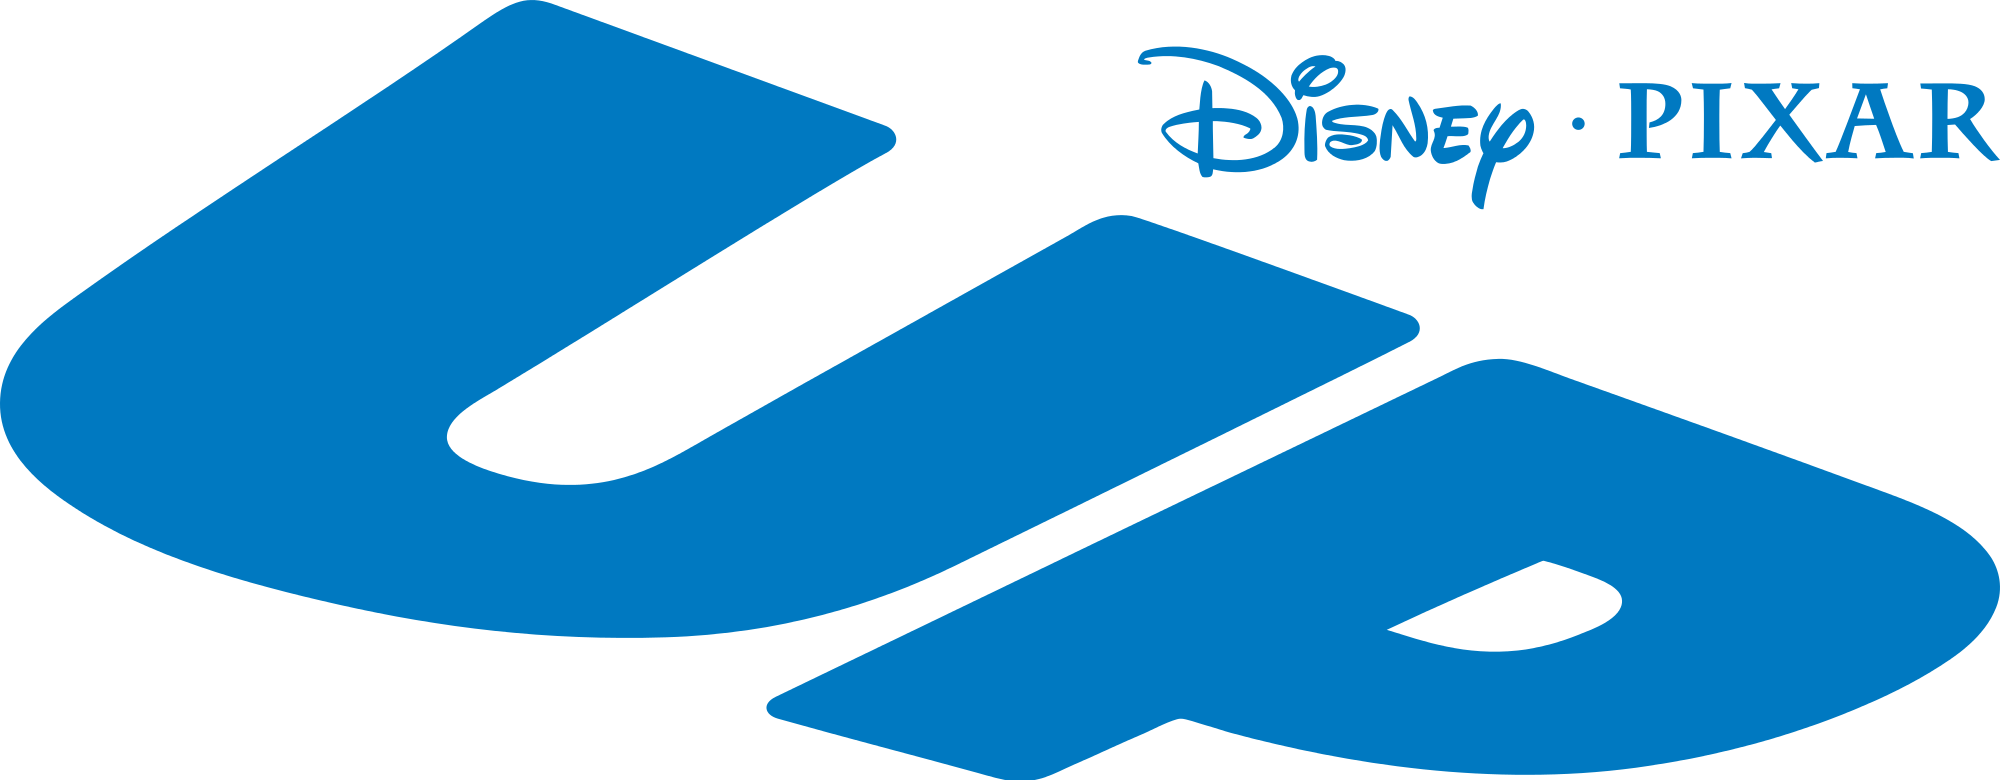 Pixar Up Logo - Up (film) | Logopedia | FANDOM powered by Wikia